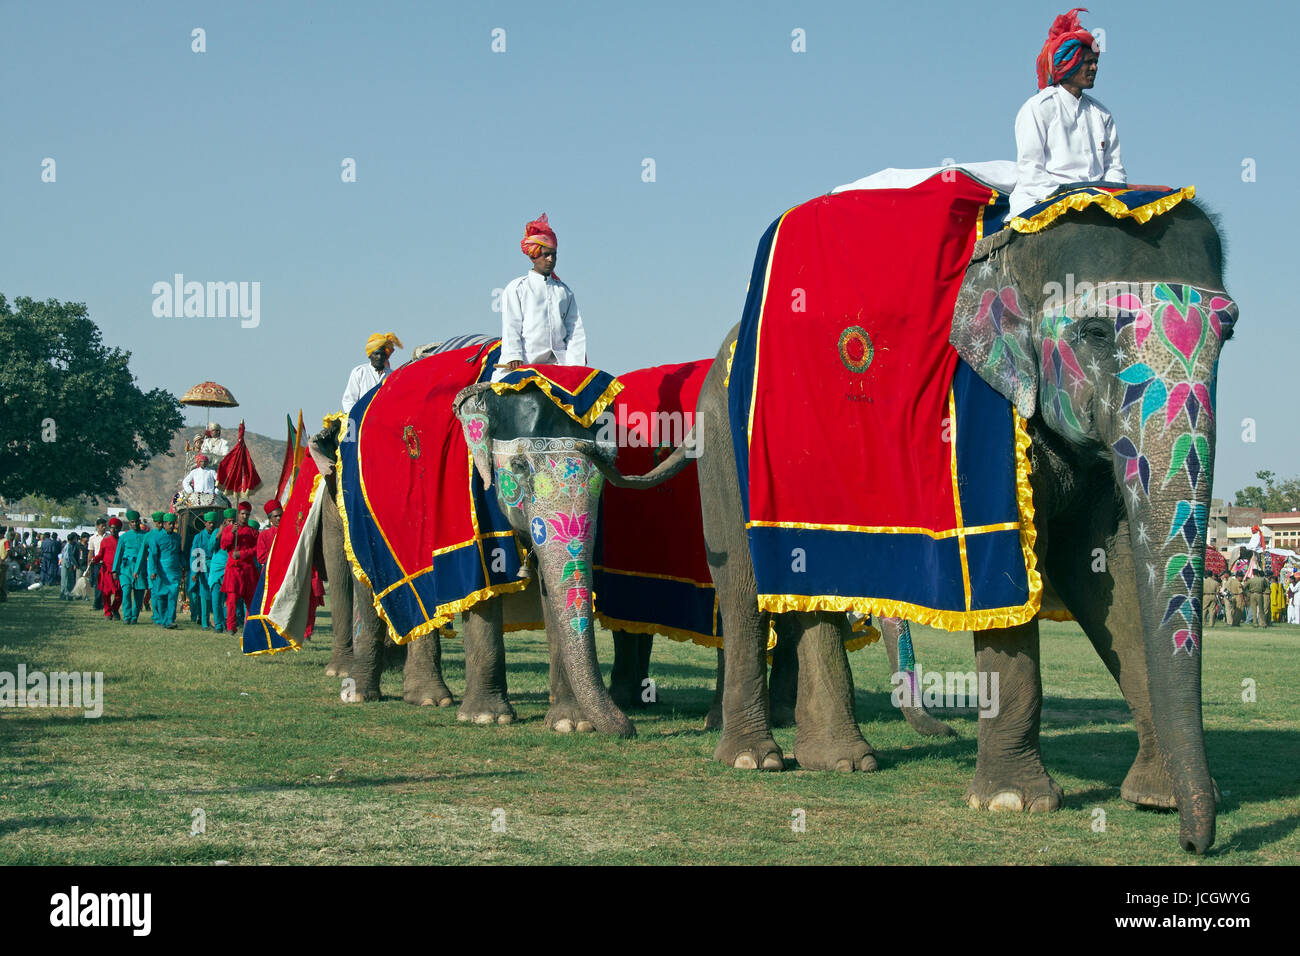 Décoré d'éléphants indiens (Elephas maximus indicus) et mahout défilant à l'assemblée annuelle du festival de l'éléphant à Jaipur, Rajasthan, Inde. Banque D'Images